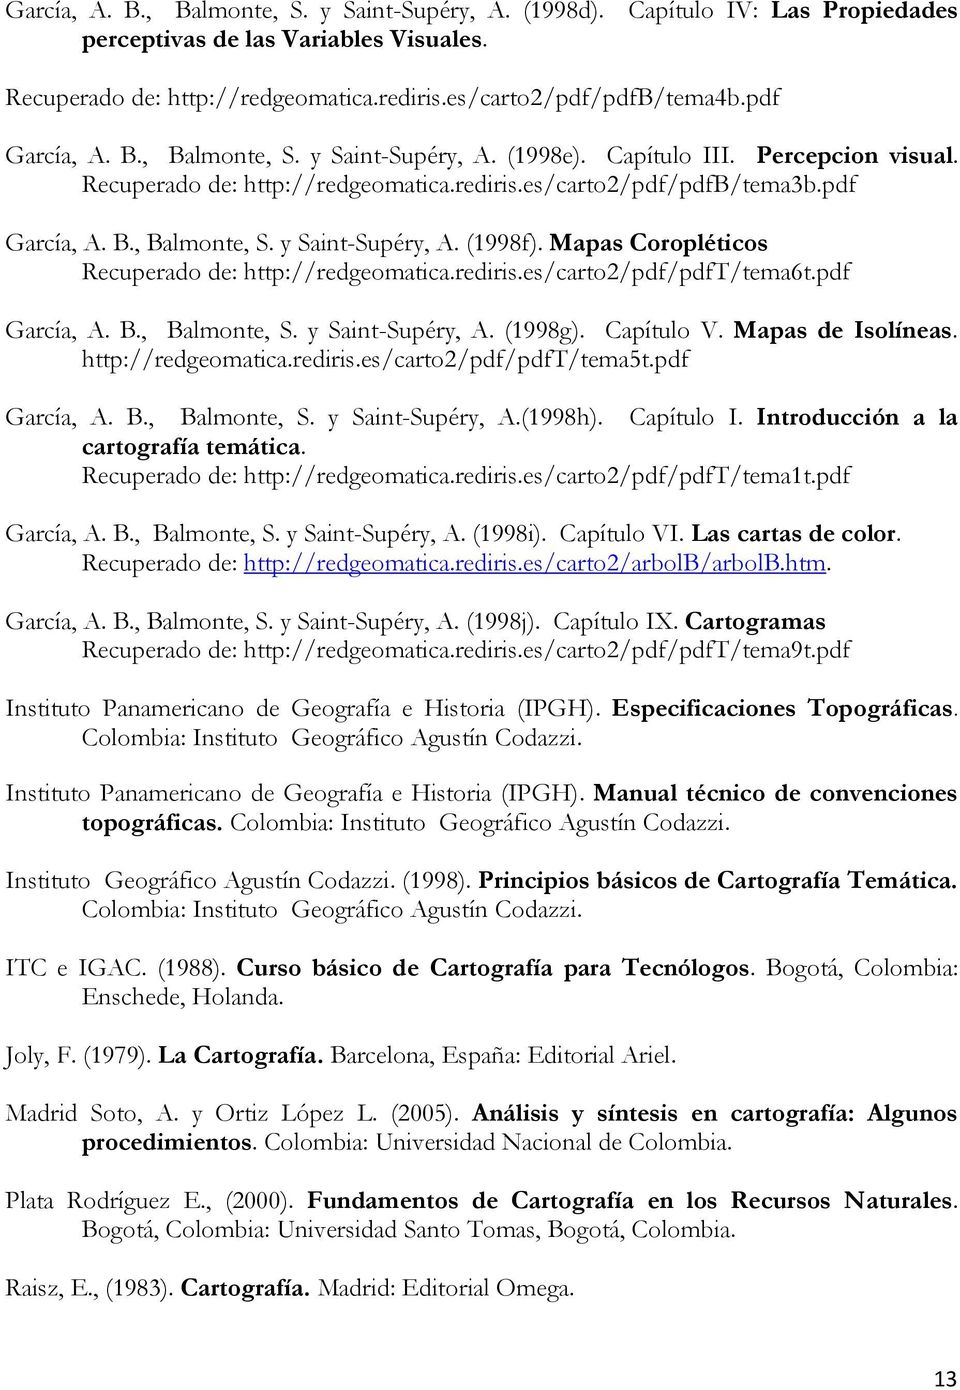 Mapas Coropléticos Recuperado de: http://redgeomatica.rediris.es/carto2/pdf/pdft/tema6t.pdf García, A. B., Balmonte, S. y Saint-Supéry, A. (1998g). Capítulo V. Mapas de Isolíneas. http://redgeomatica.rediris.es/carto2/pdf/pdft/tema5t.